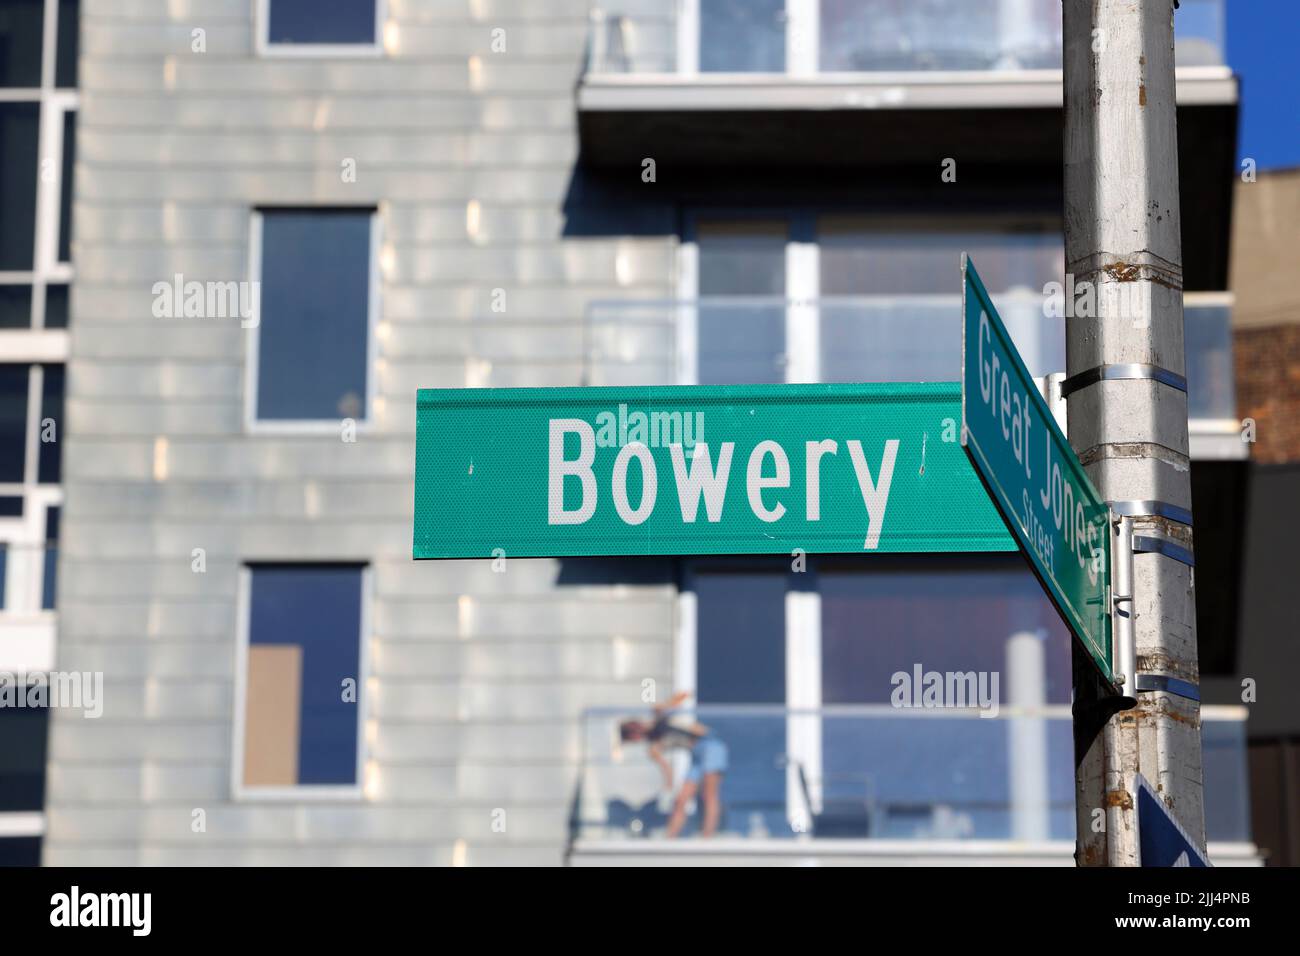 Bowery Straßenschild in Manhattan East Village, Lower East Side, New York. Bowery Straßenschild in der Nähe der Great Jones St und vielen neuen Wohnungen und Wohnungen. Stockfoto